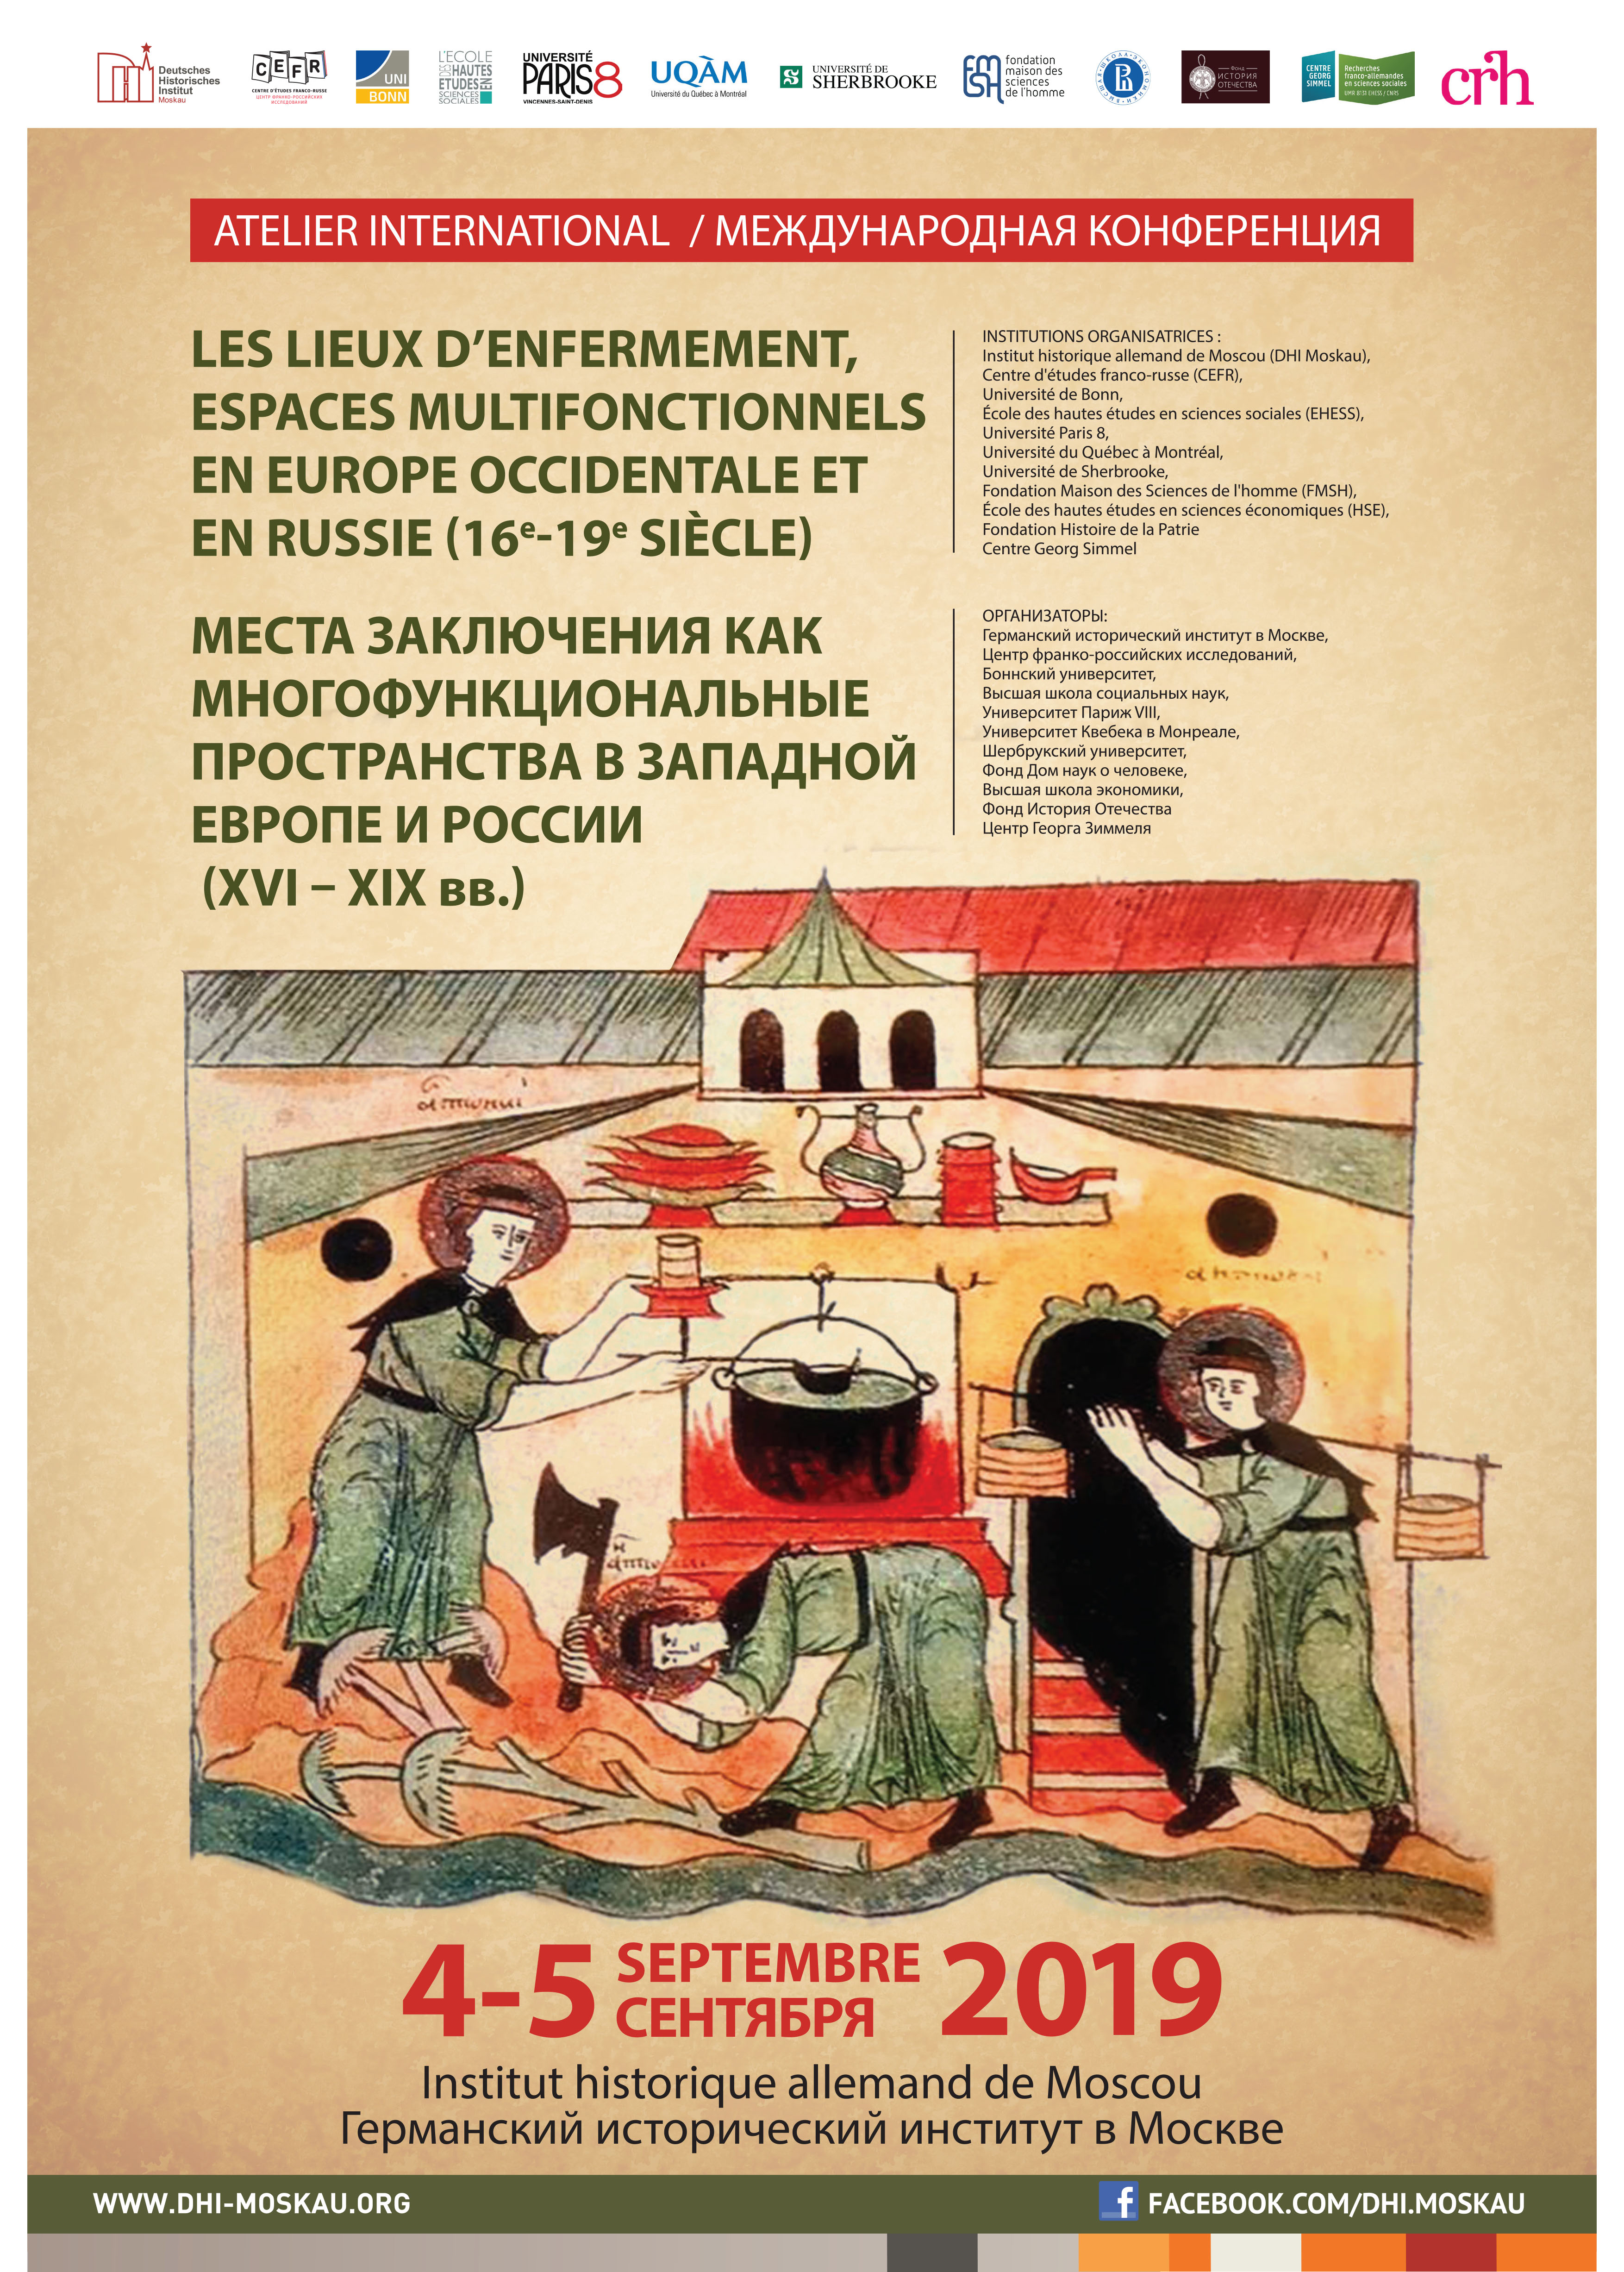 Les lieux d’enfermement, espaces multifonctionnels en Europe occidentale et en Russie (XVIe-XIXe siècle)